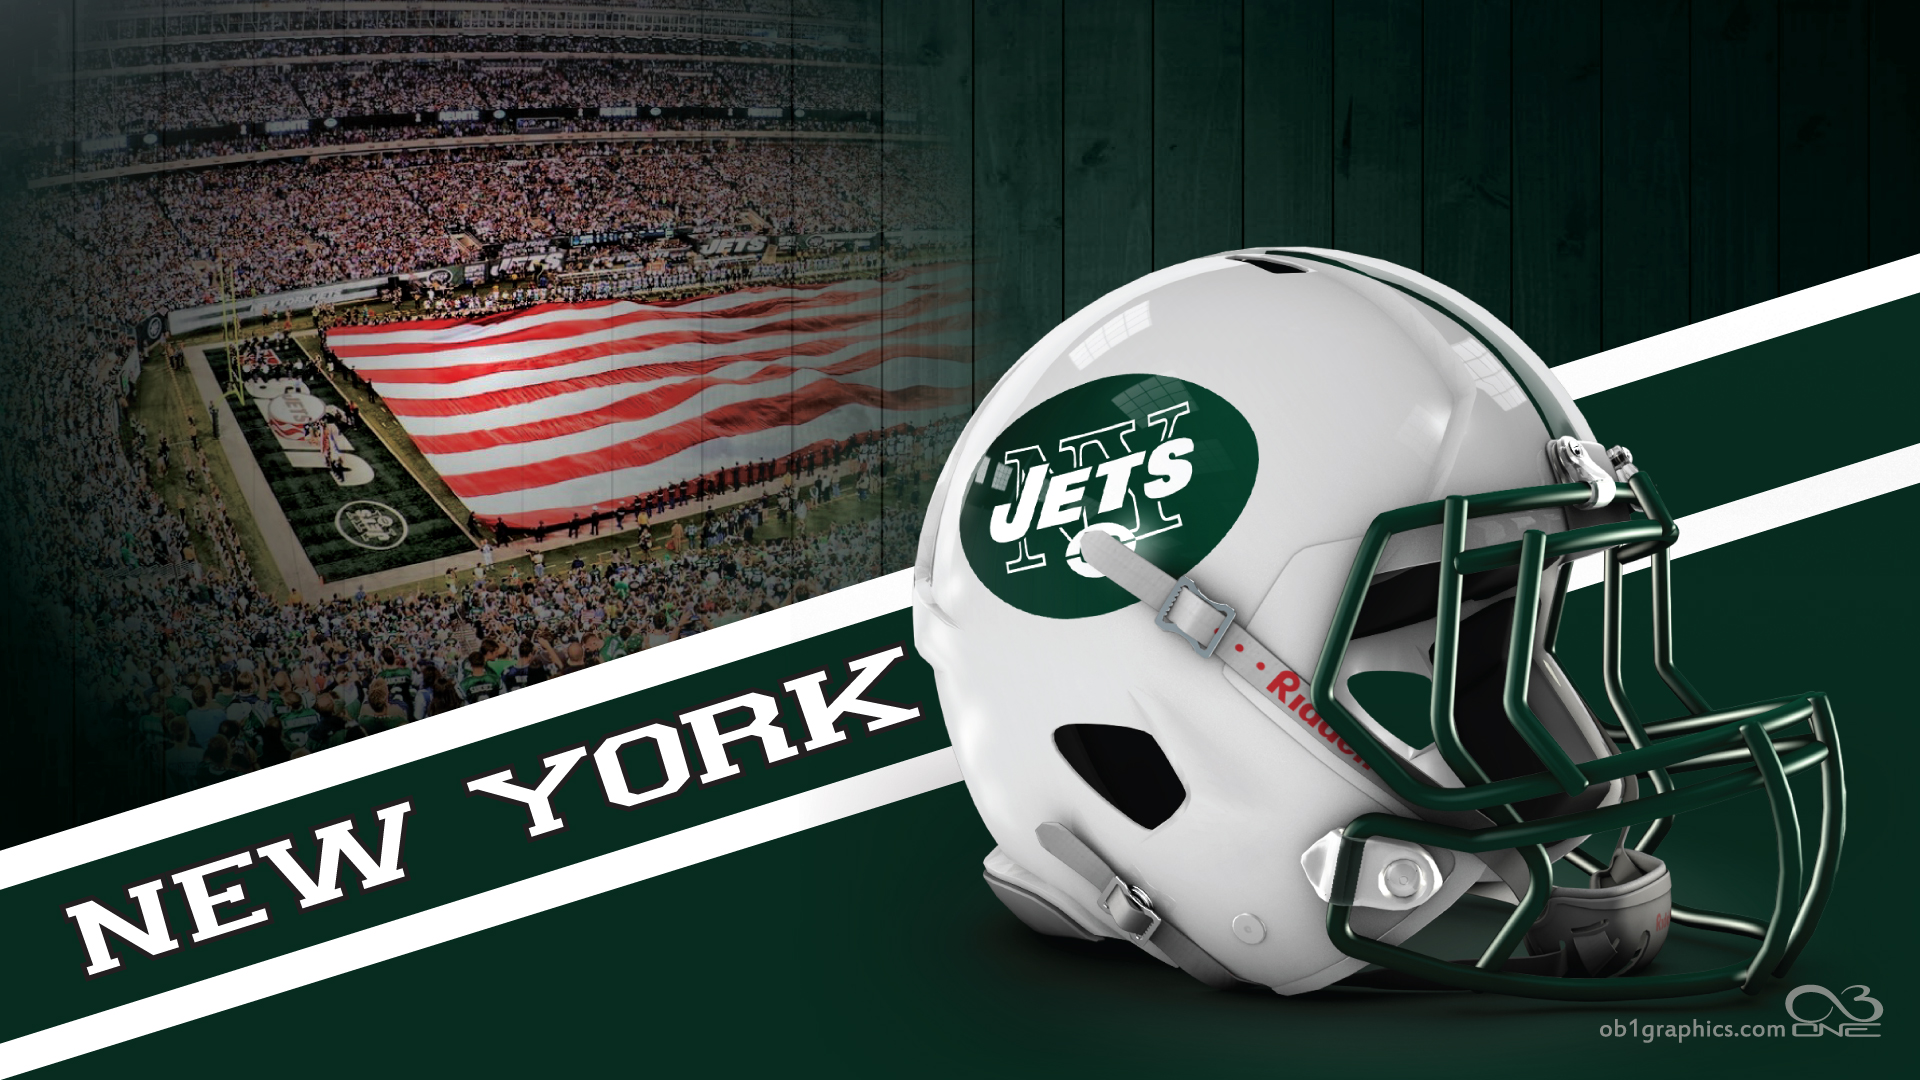 New York Jets on Twitter wallpaper version  httpstcobQ9wgUS27B   Twitter